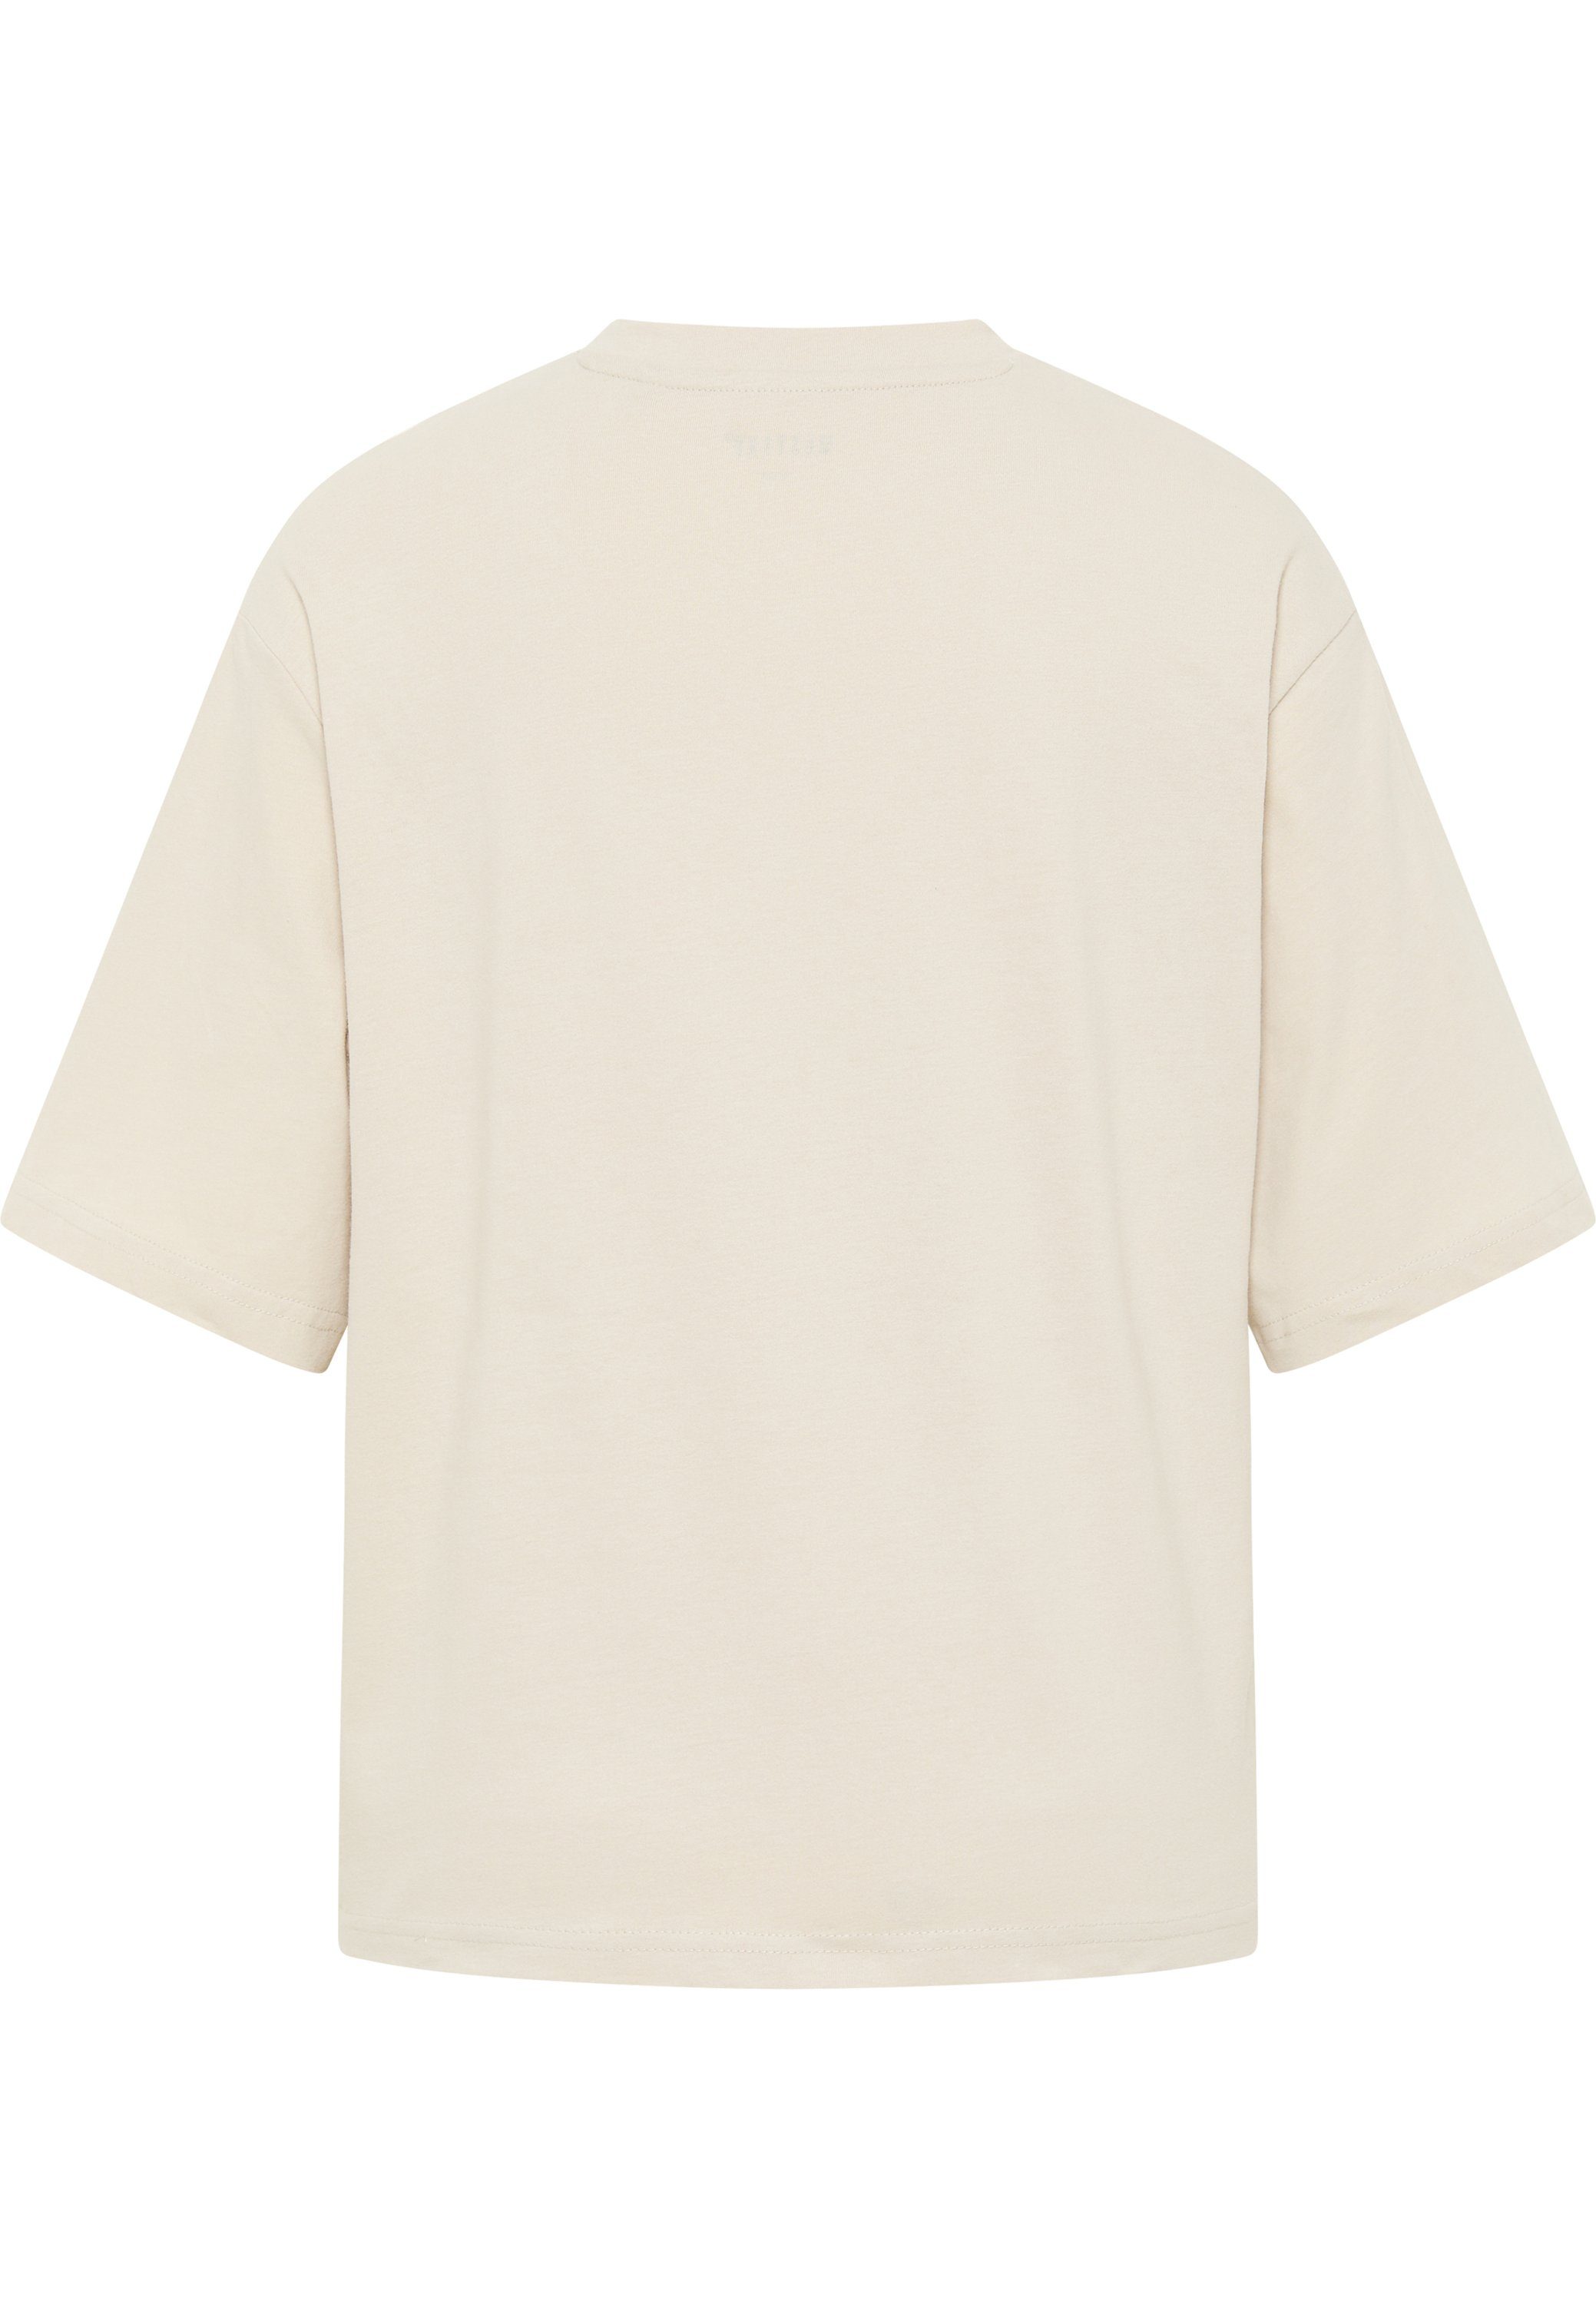 MUSTANG Kurzarmshirt Mustang T-Shirt T-Shirt beige